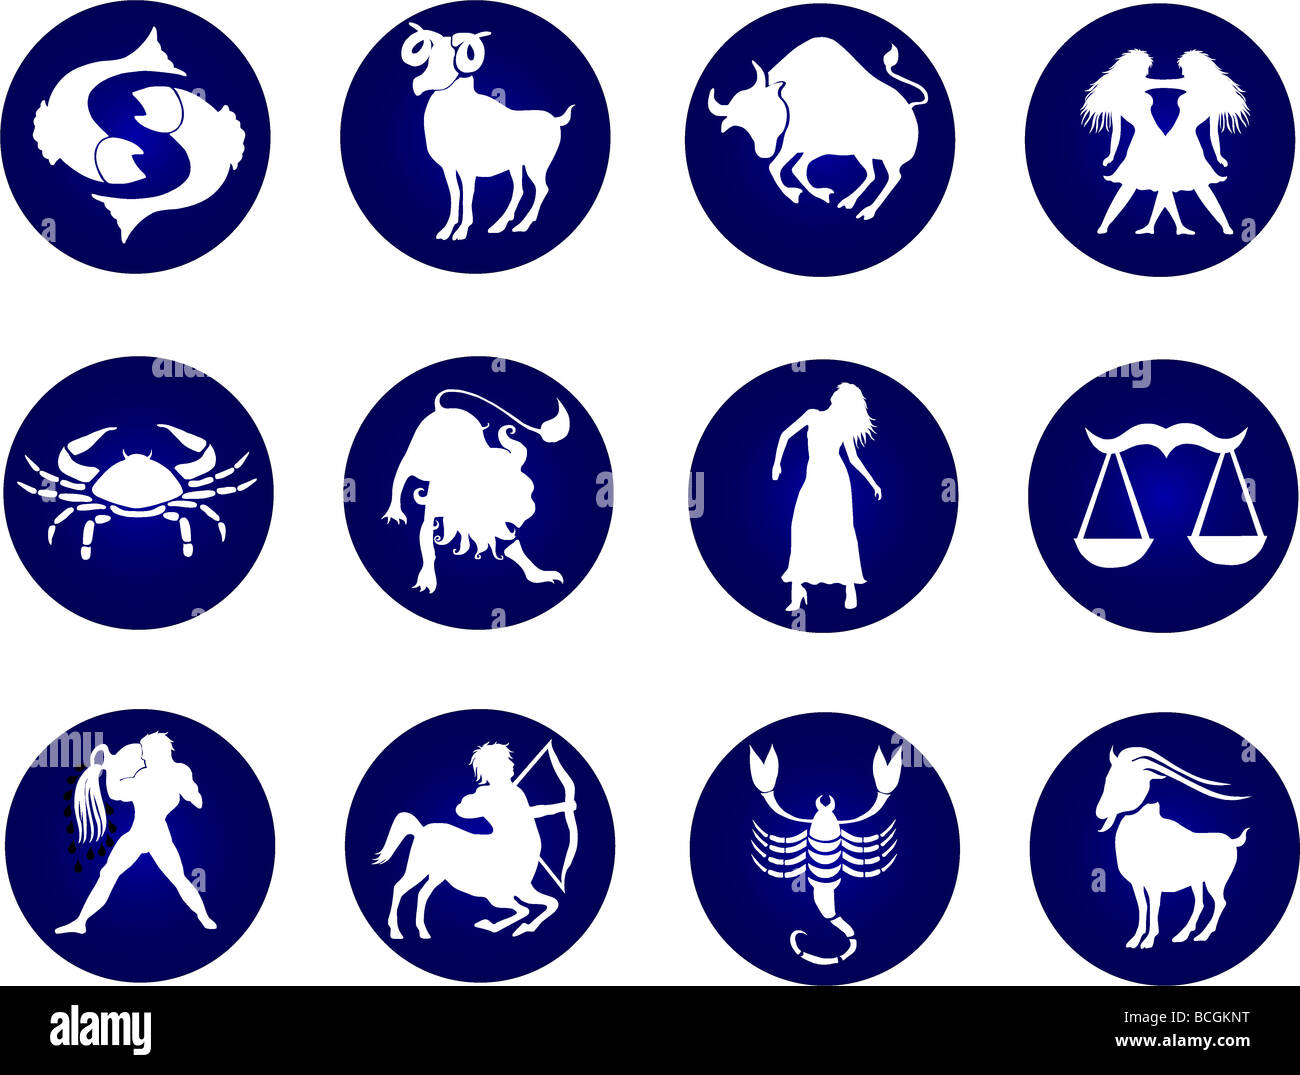 aquarius, aries, astrology, cancer, capricorn, constellation, horoscope, leo, libra, sagittarius, scorpio, sign, taurus, twin, Stock Photo